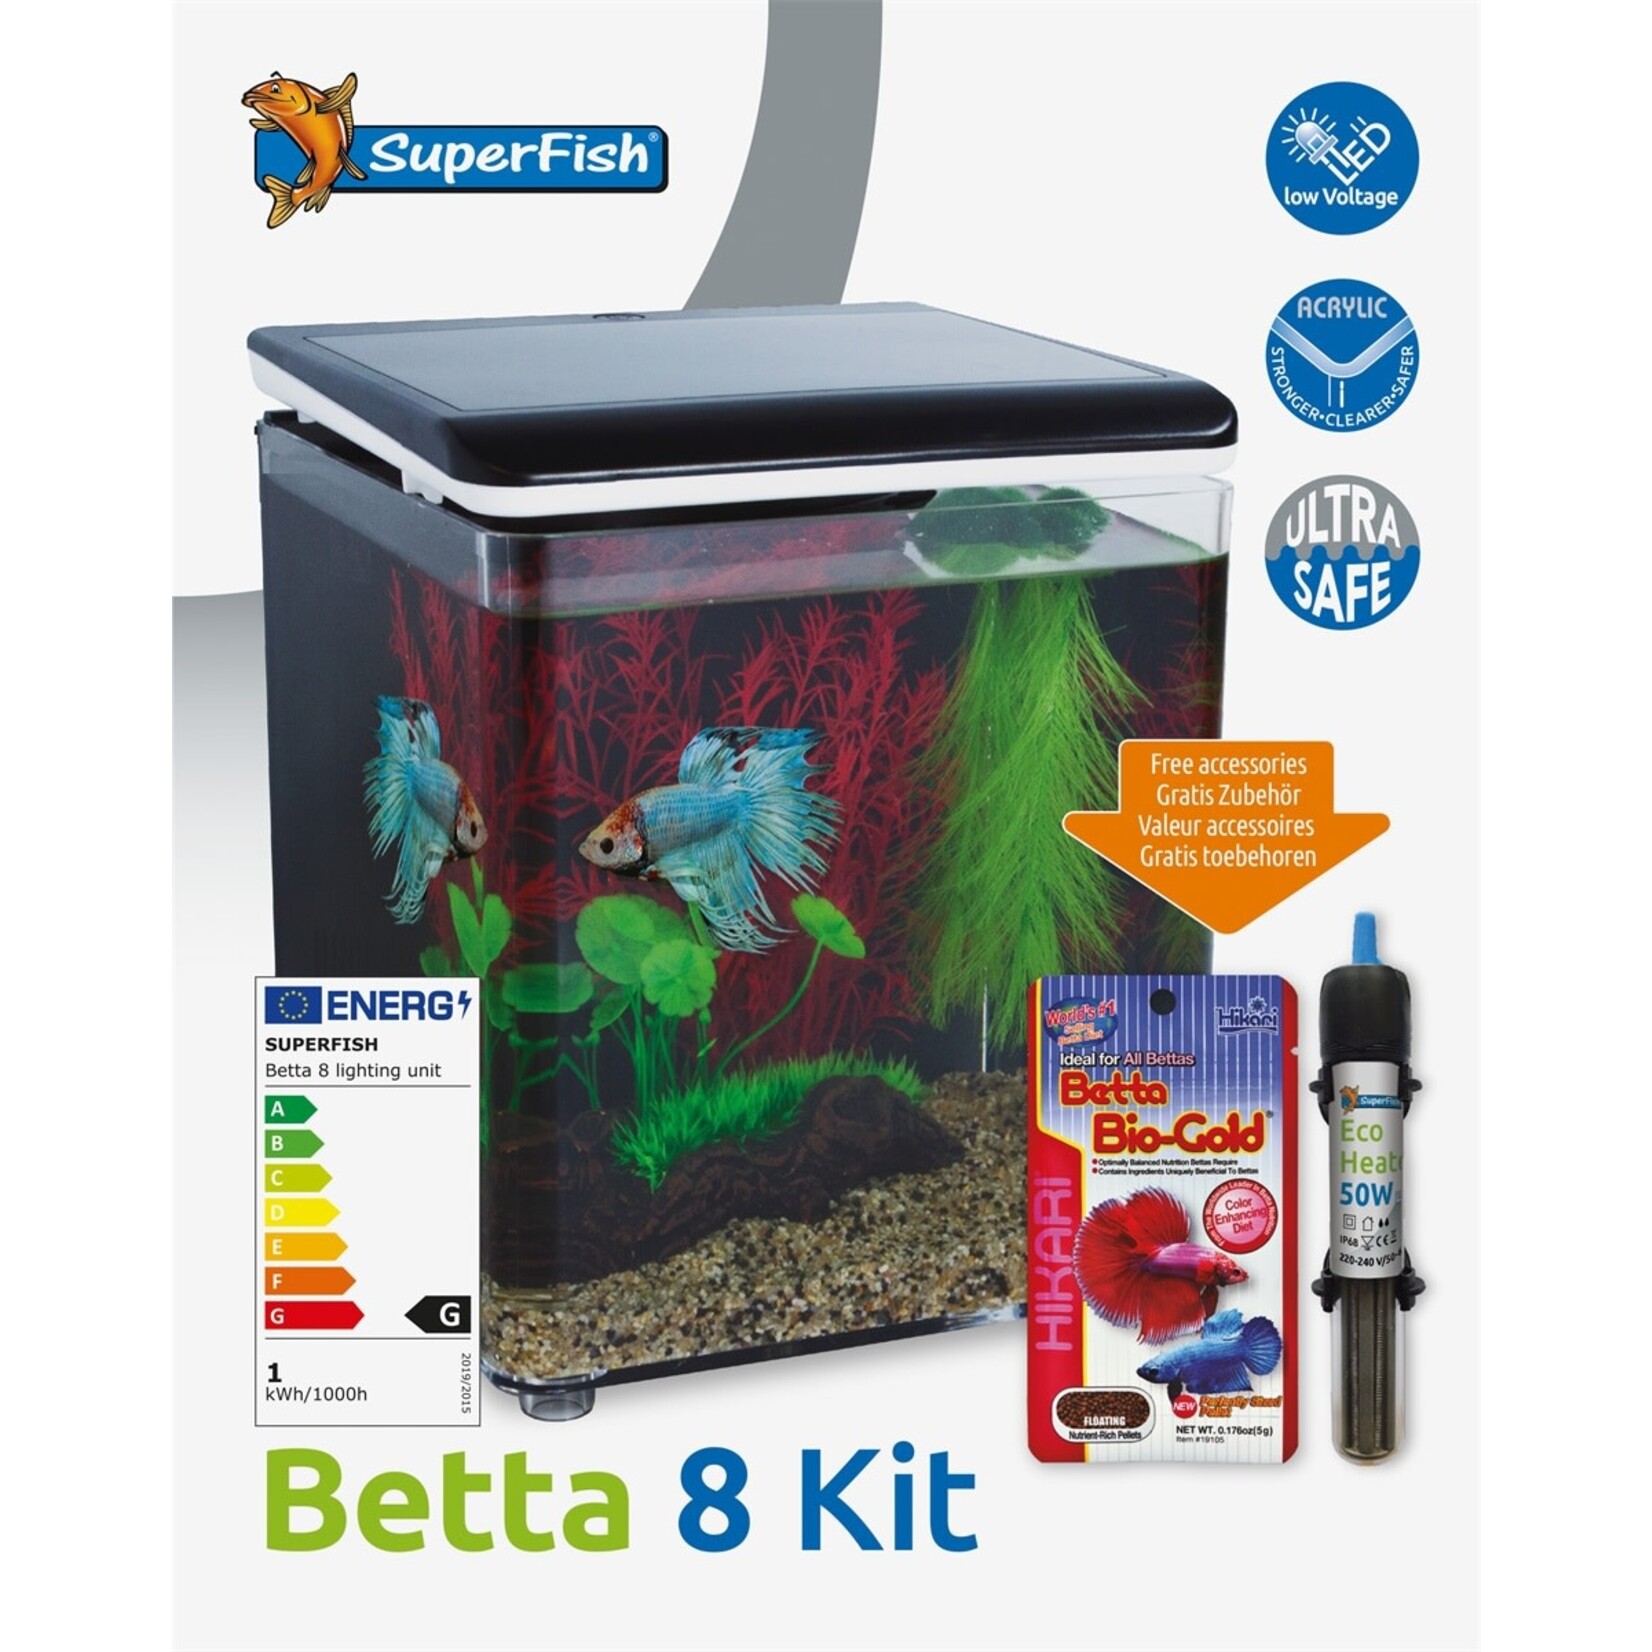 SuperFish Betta 8 aquarium black